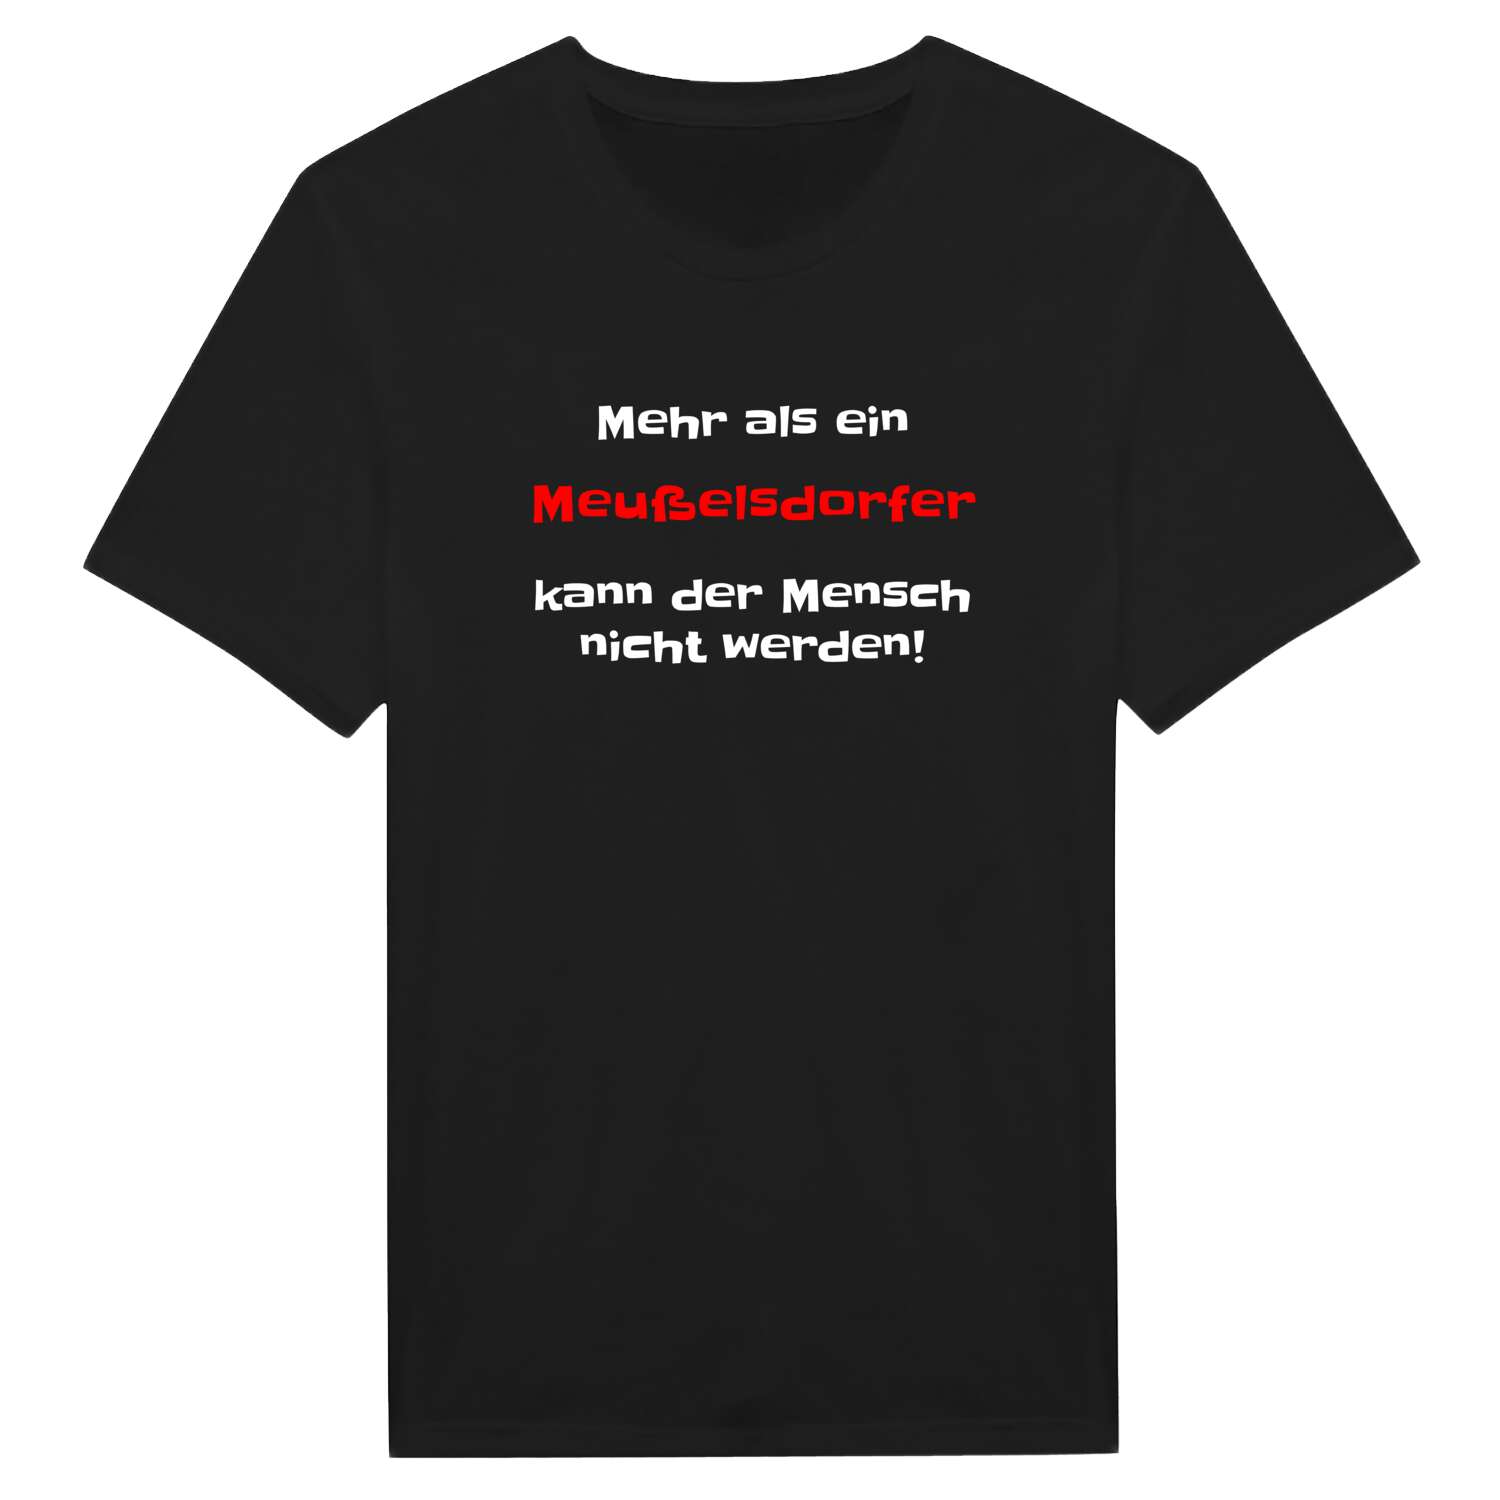 Meußelsdorf T-Shirt »Mehr als ein«